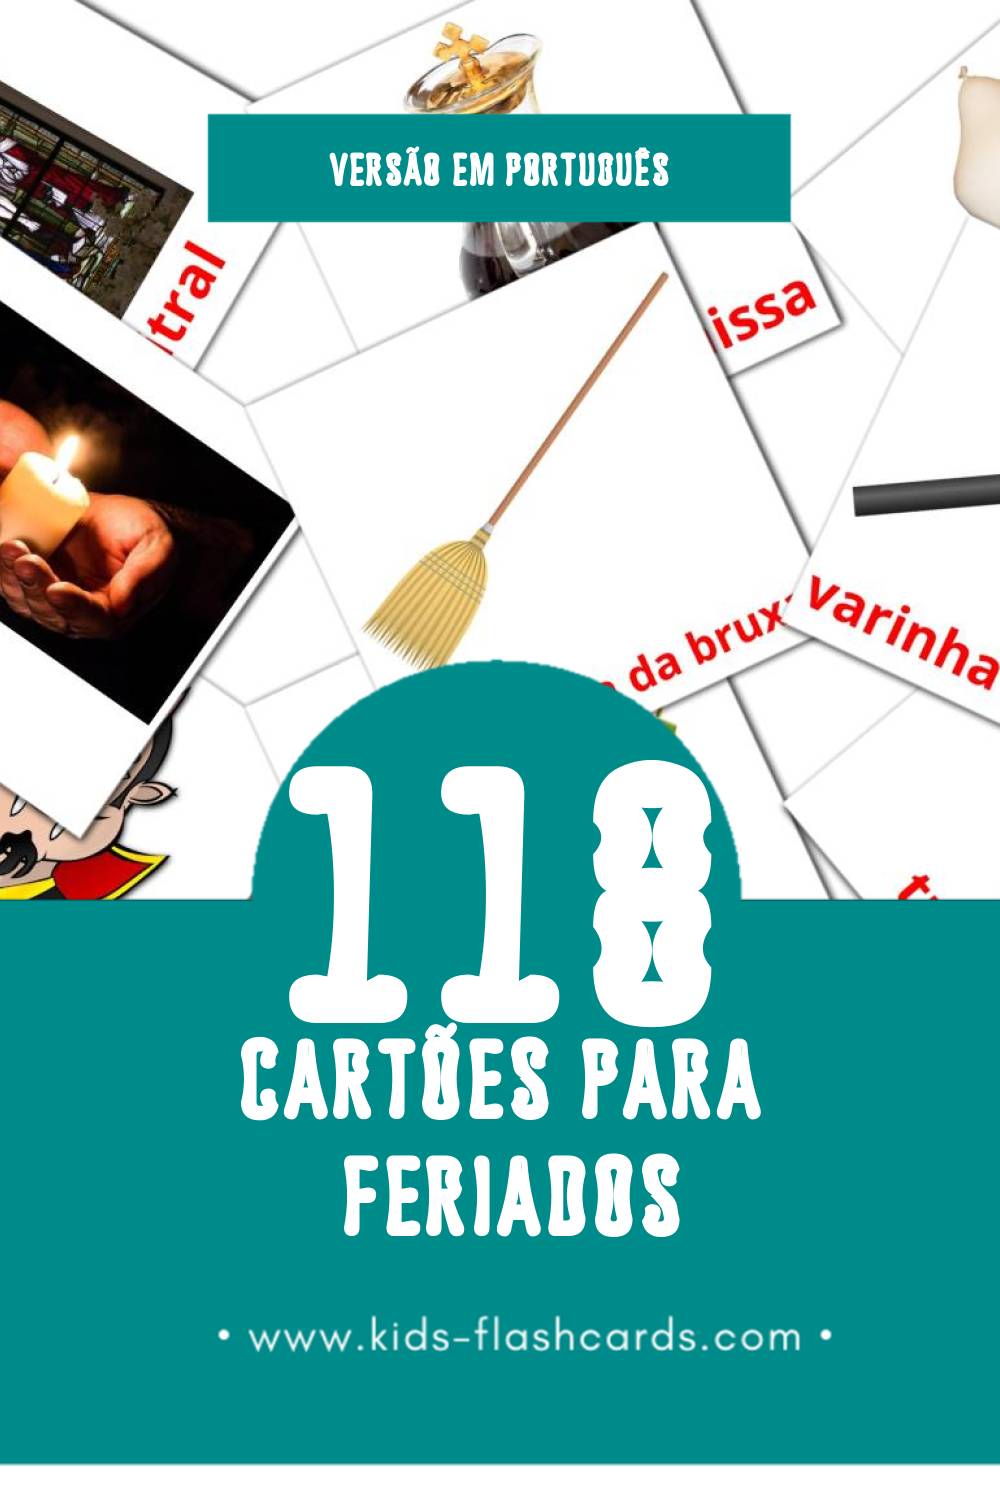 Flashcards de Feriados Visuais para Toddlers (118 cartões em Português)